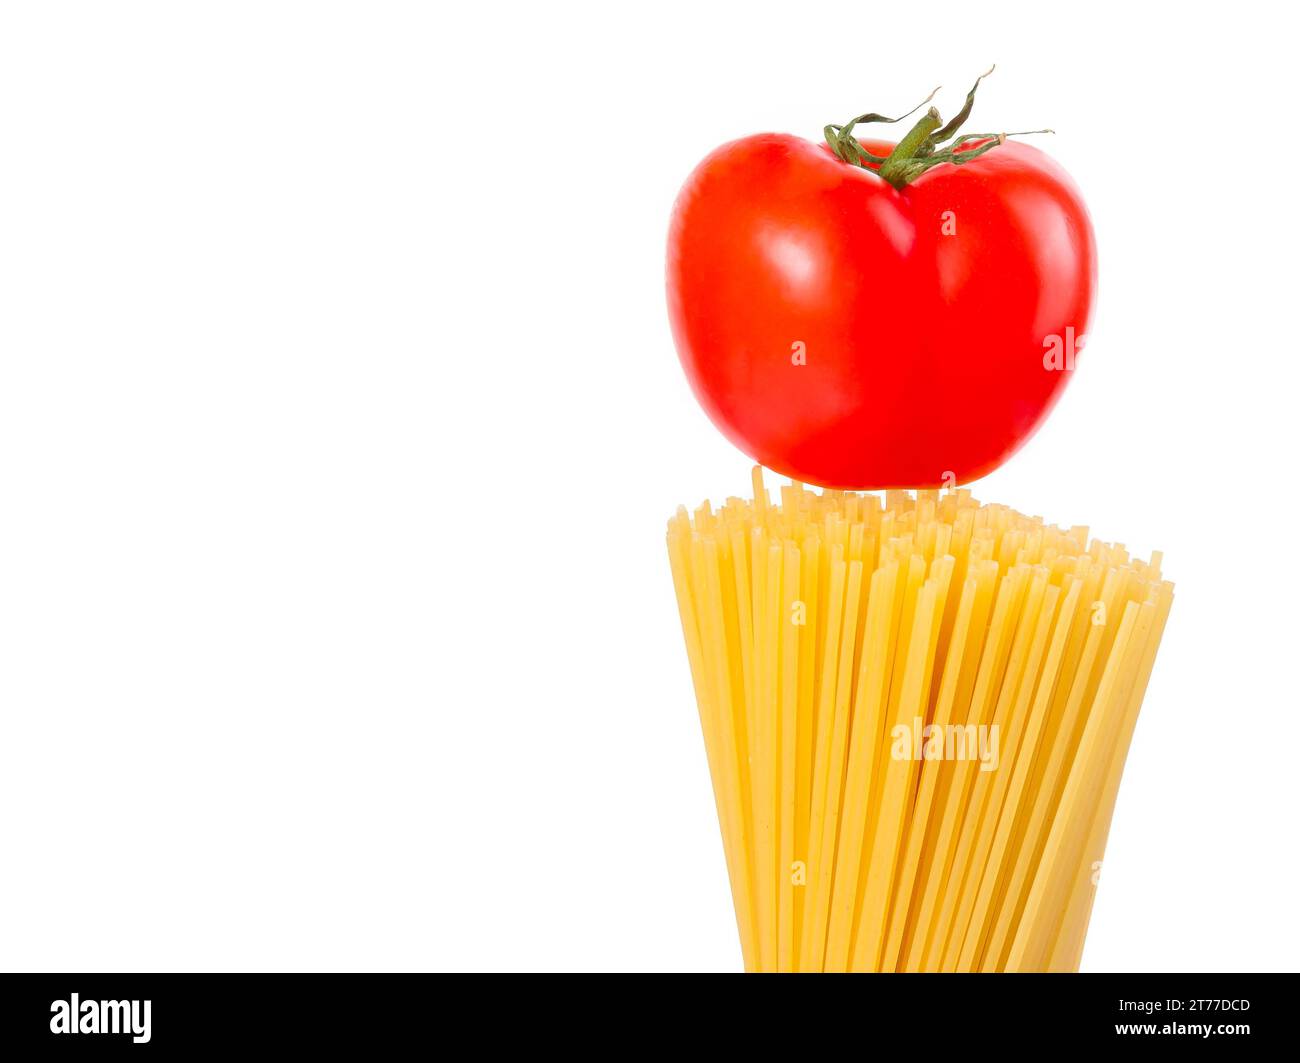 spaghetti di pasta cruda con pomodoro su fondo bianco con spazio per il testo, tipica cucina italiana Foto Stock